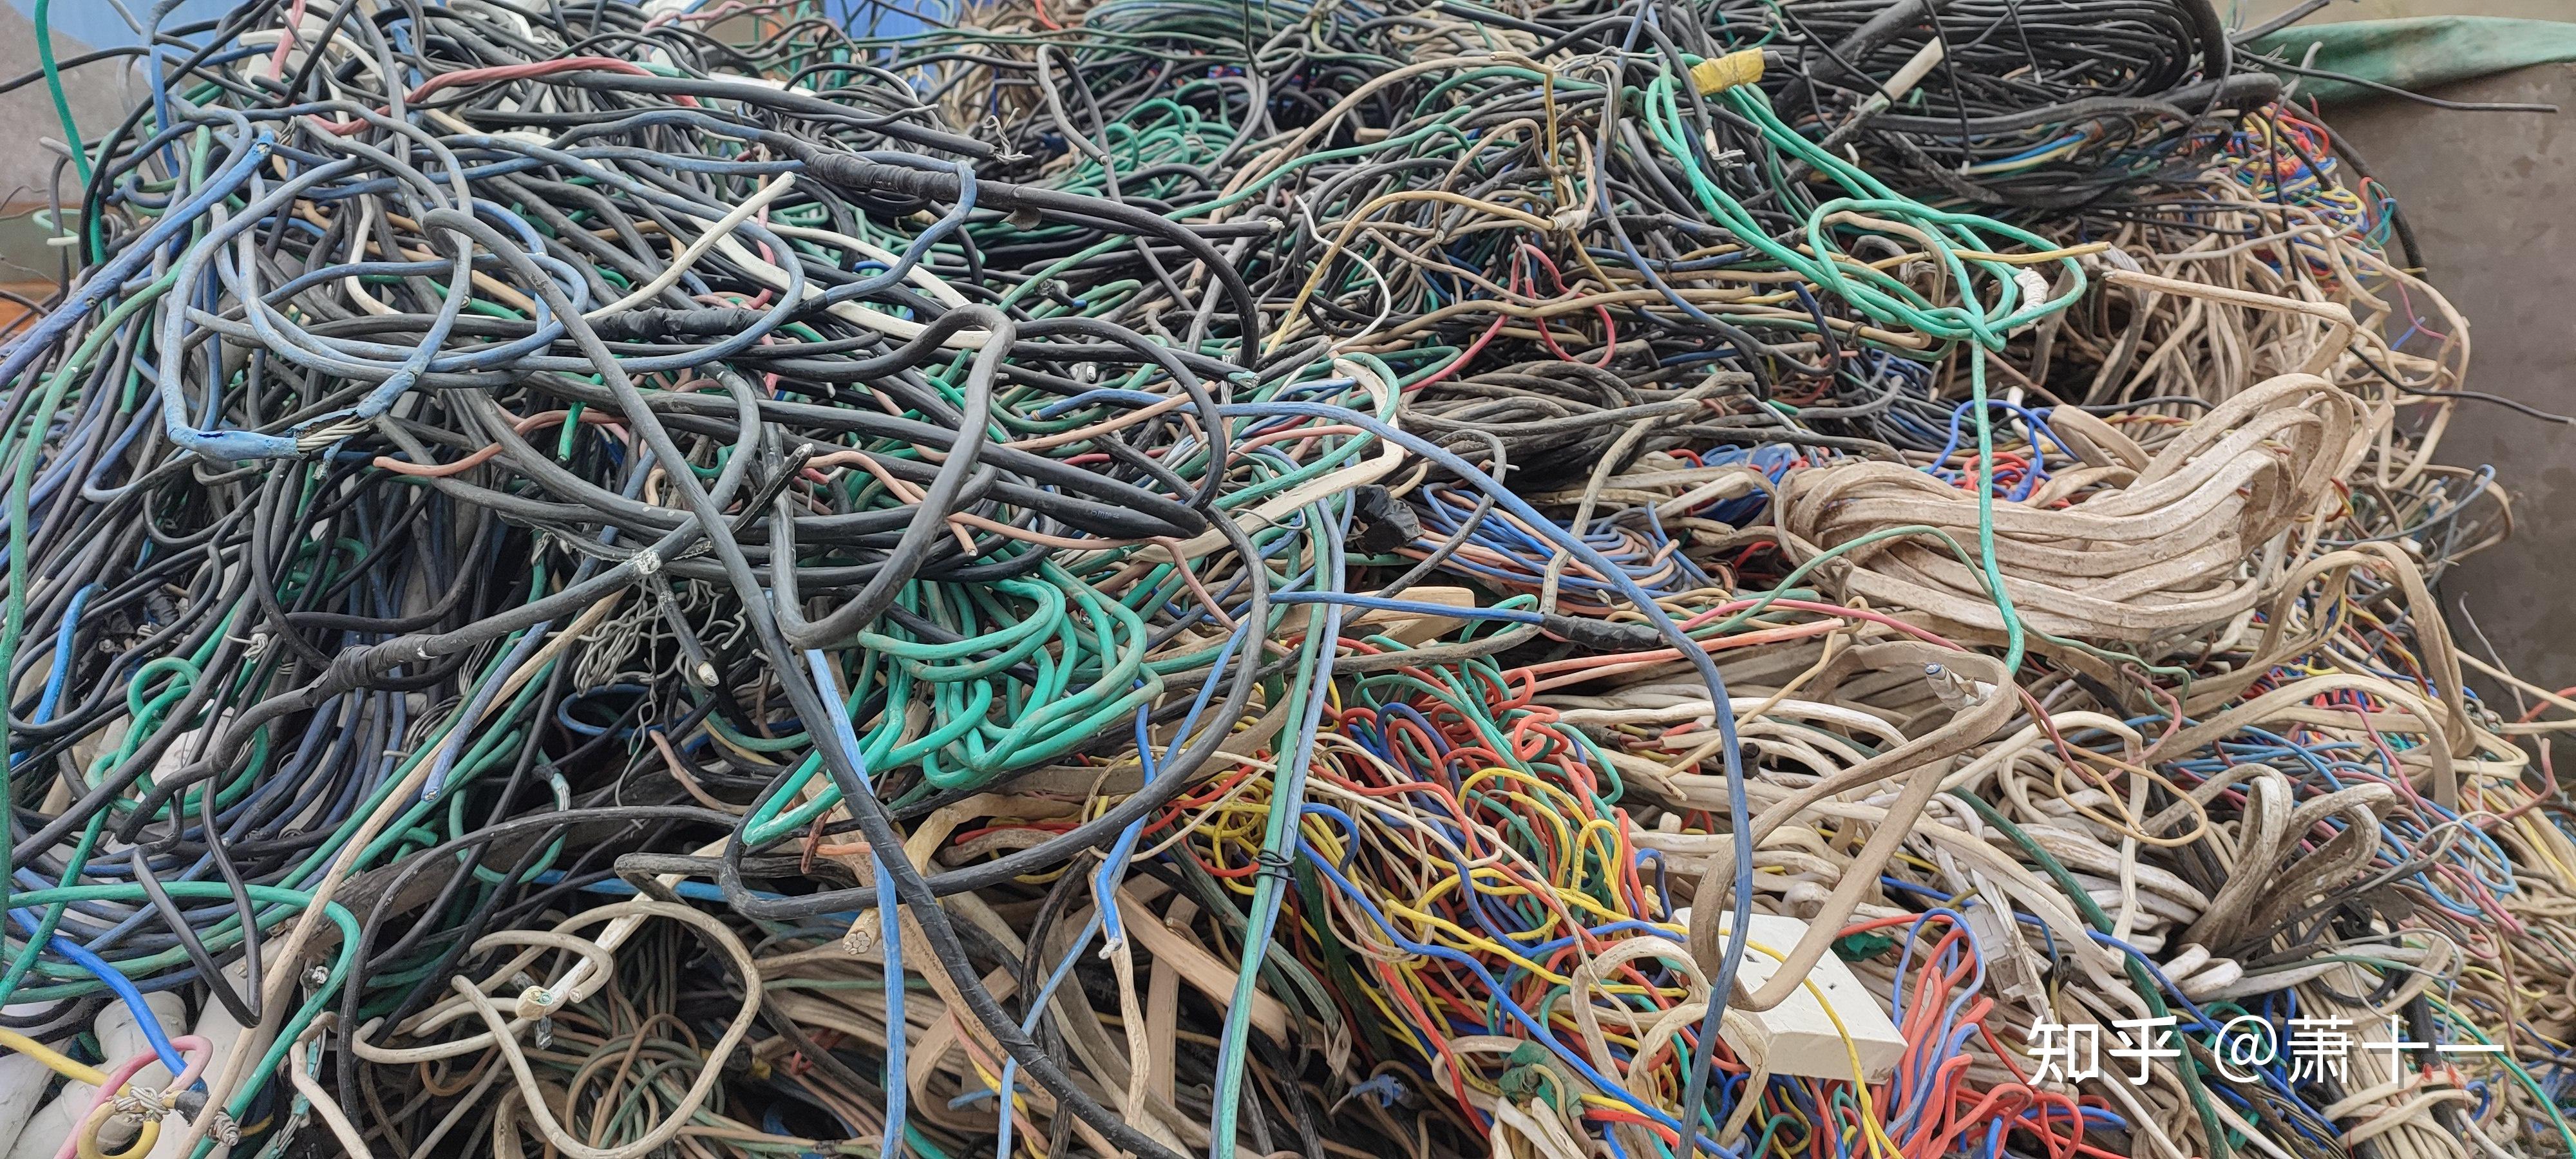 回收的废旧电线电缆如何处理来提升价值